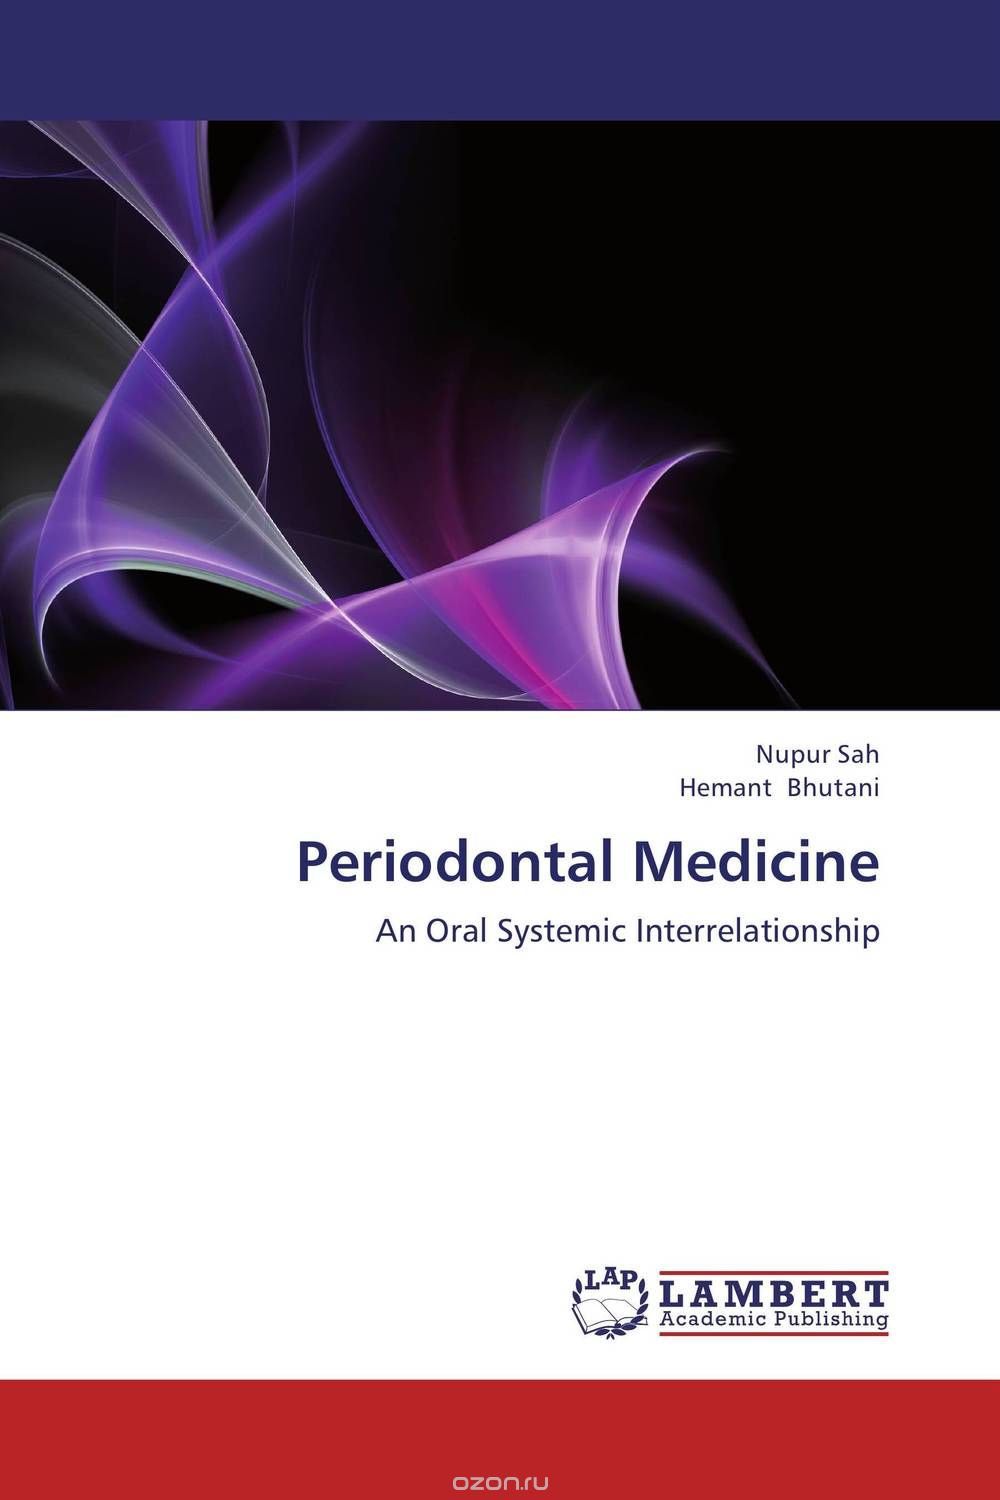 Скачать книгу "Periodontal Medicine"